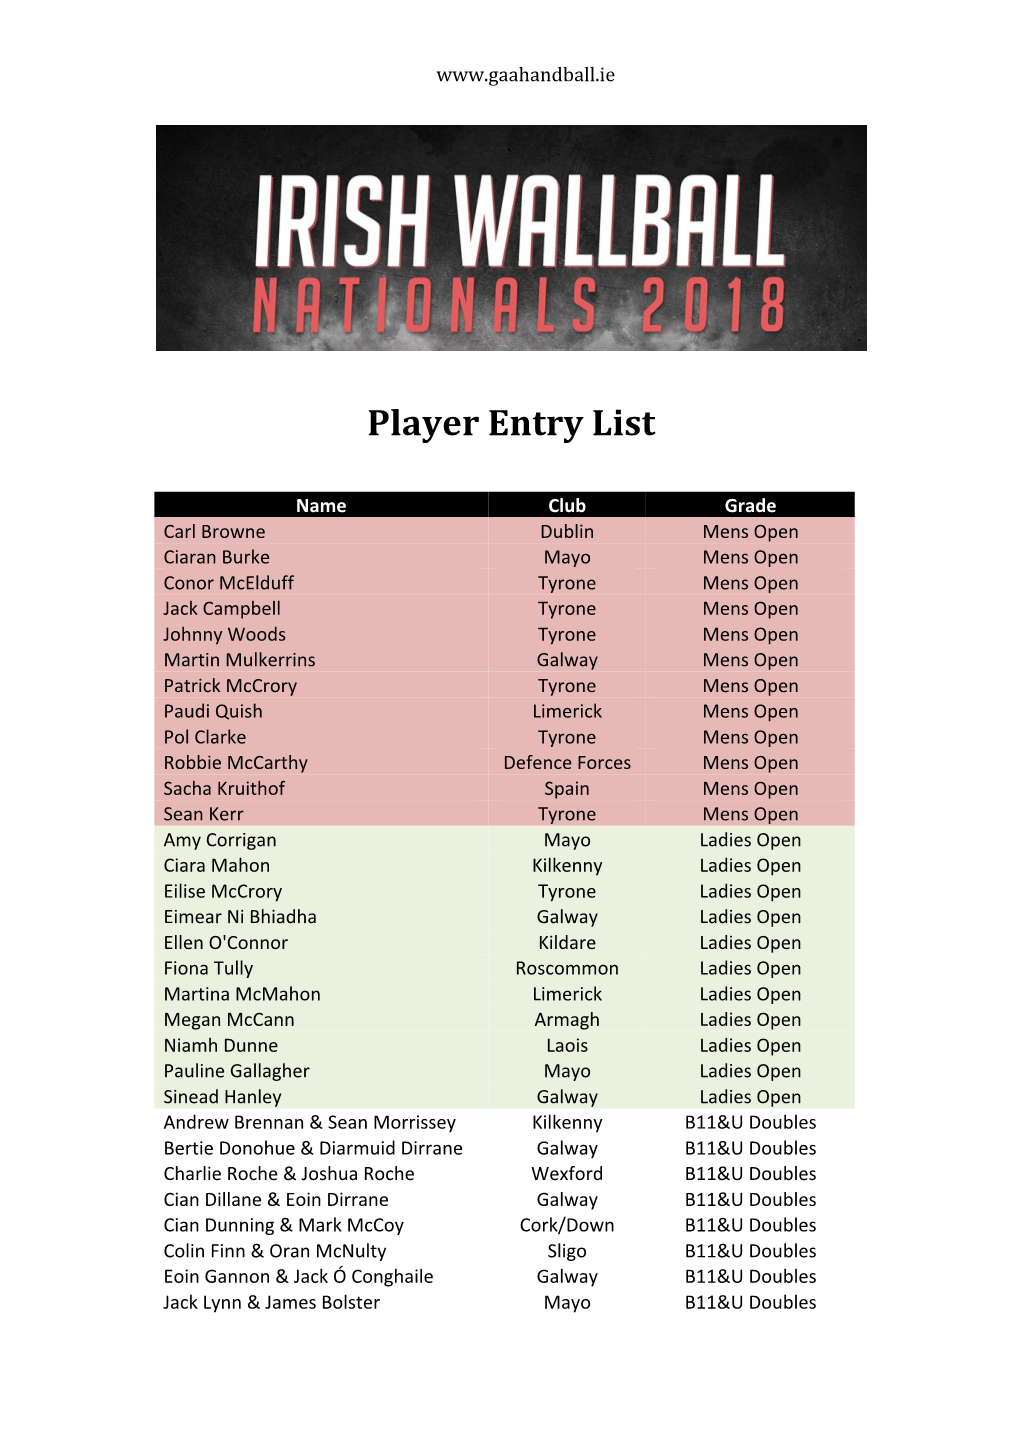 Player Entry List